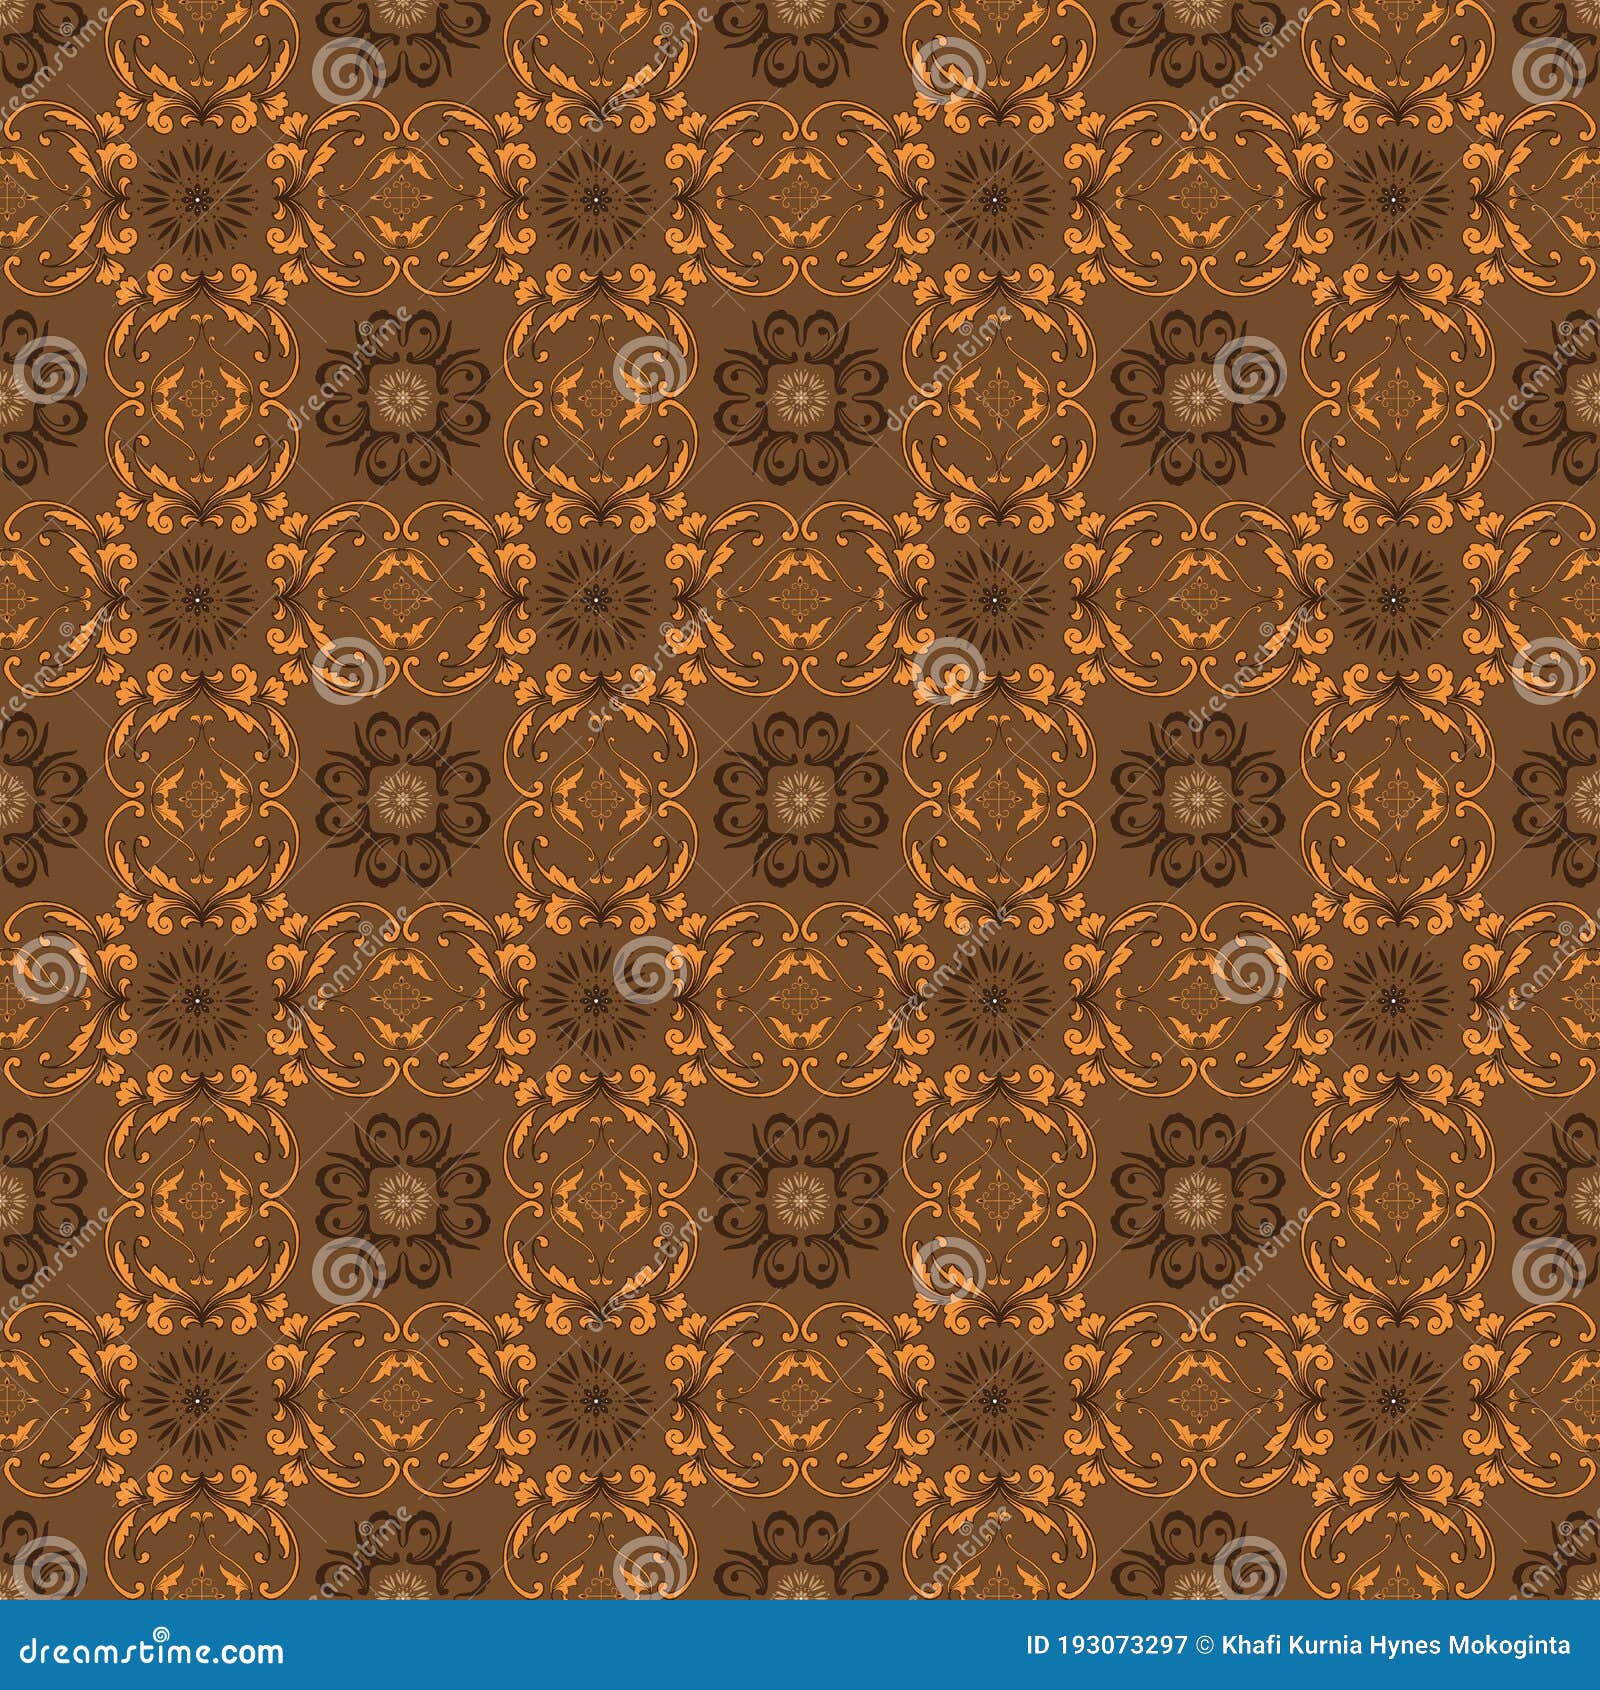 Simple Flower Pattern On Javanese Batik With Seamless Golden Brown